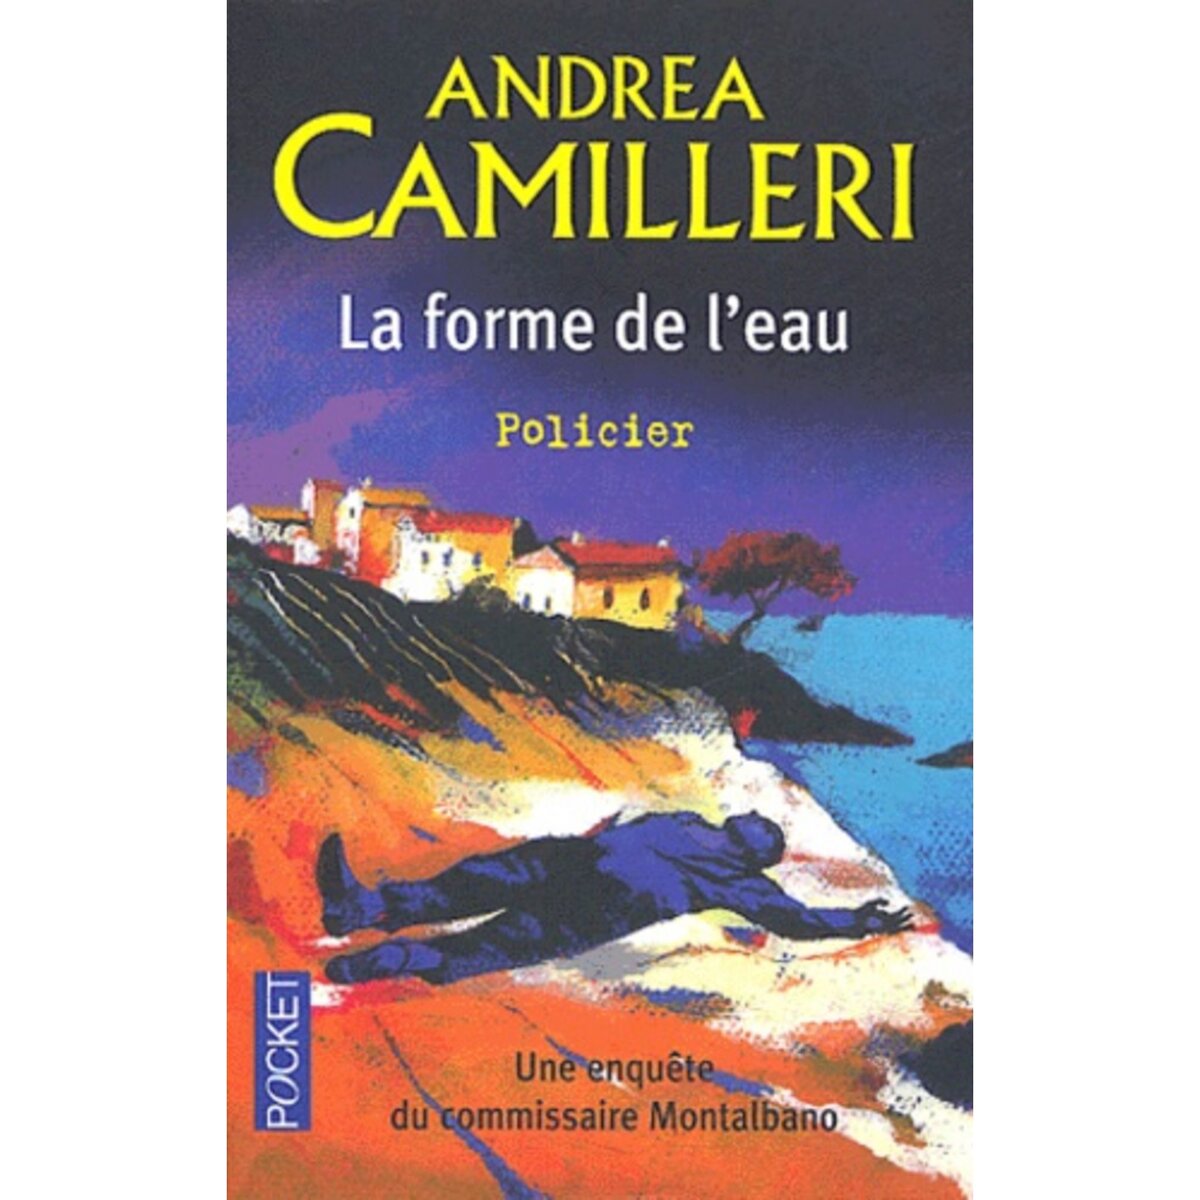  LA FORME DE L'EAU, Camilleri Andrea